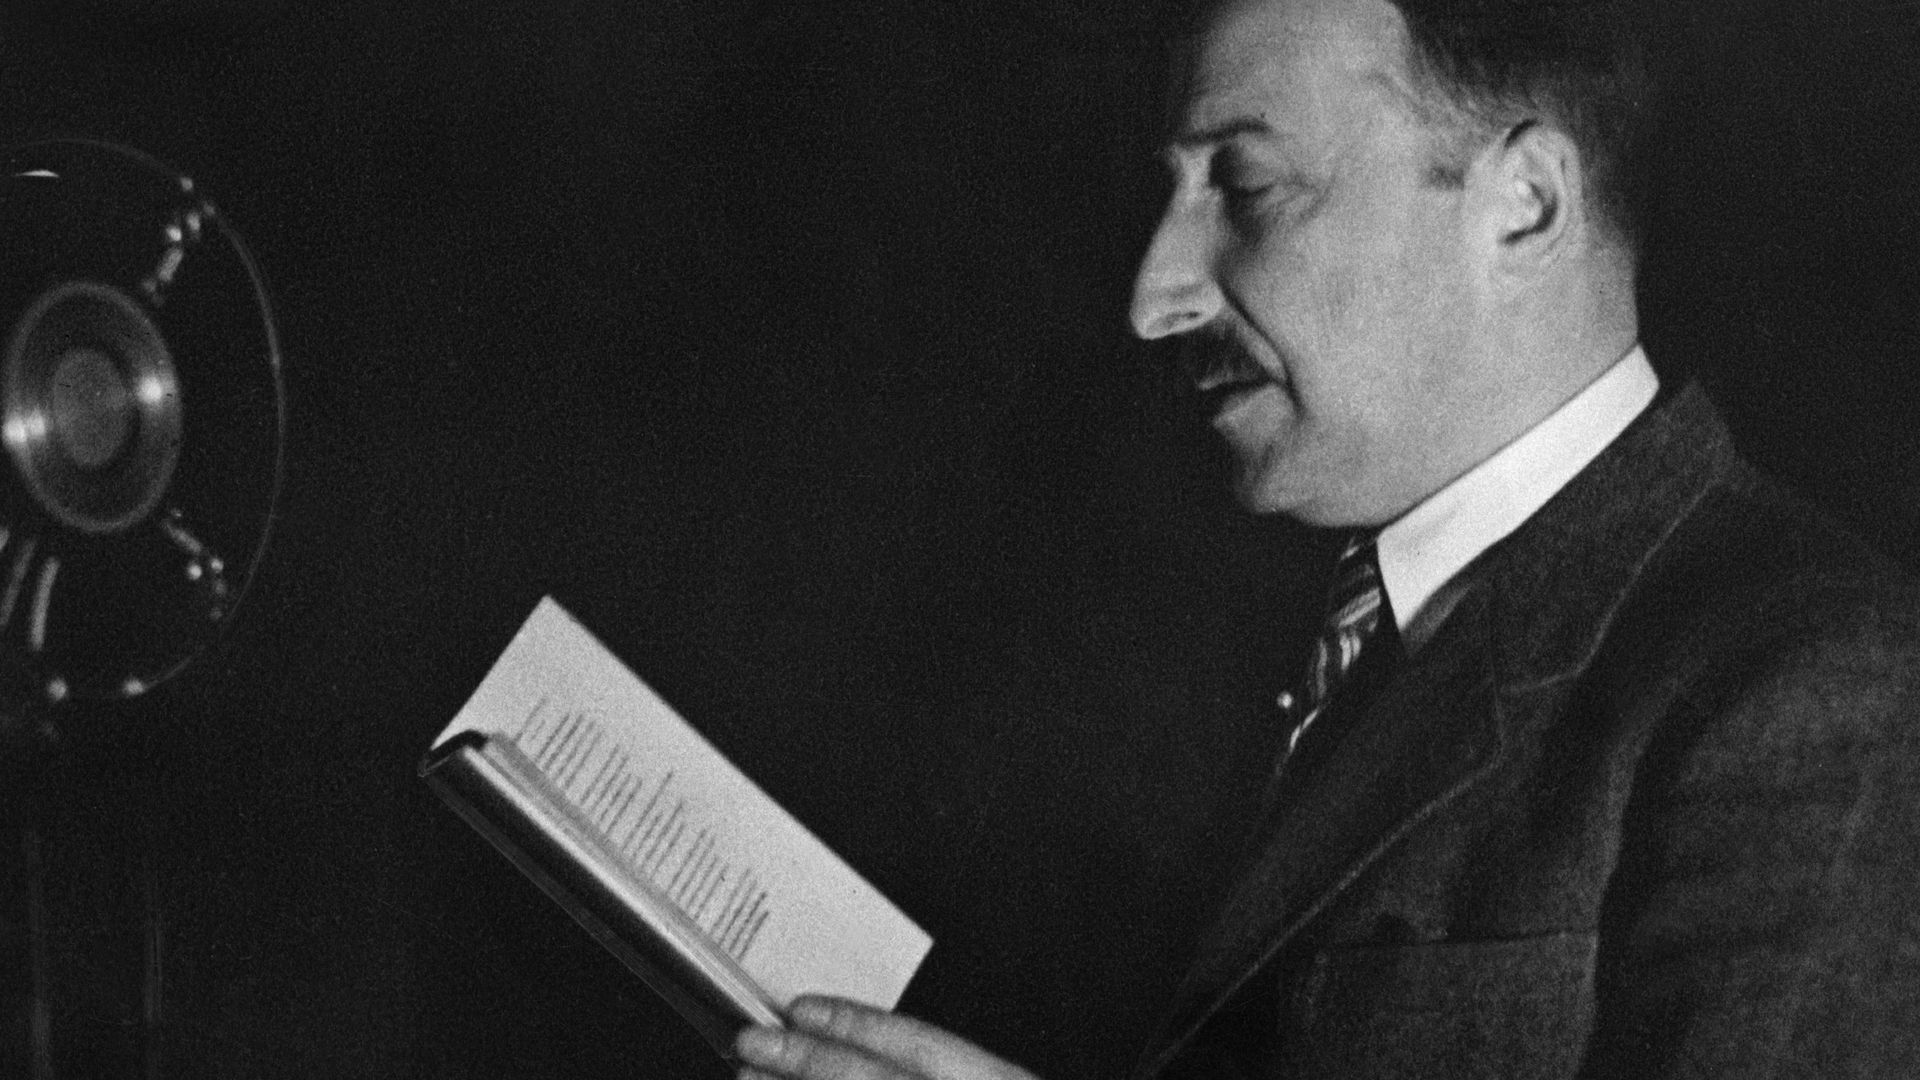 L’uniformisation du monde, un texte alarmant et visionnaire de Stefan Zweig, écrit en 1925